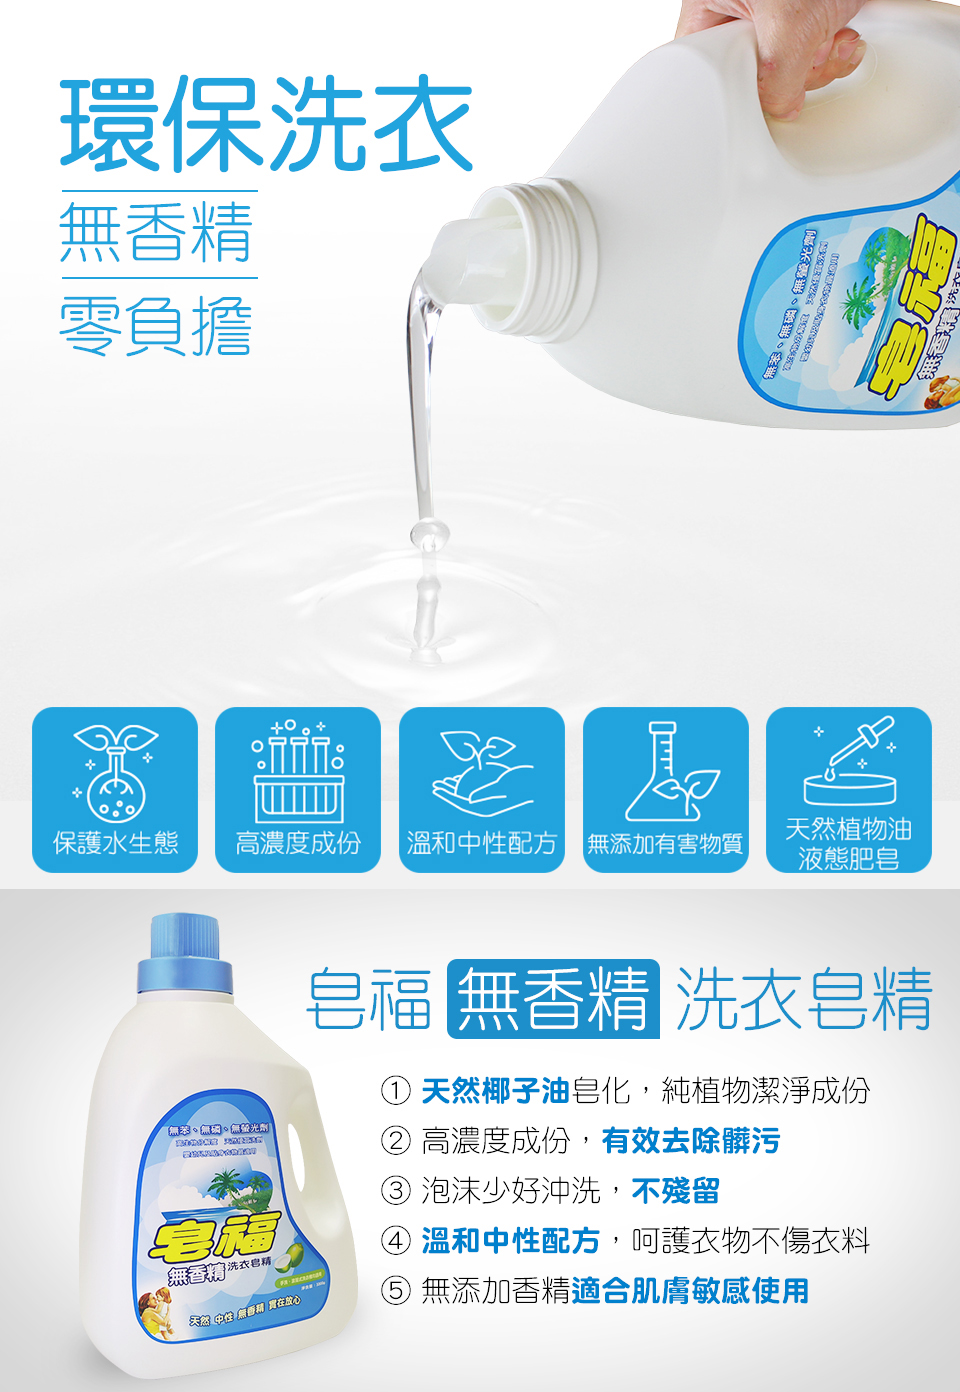 【皂福】天然純植物油洗衣皂精(3300g/瓶)